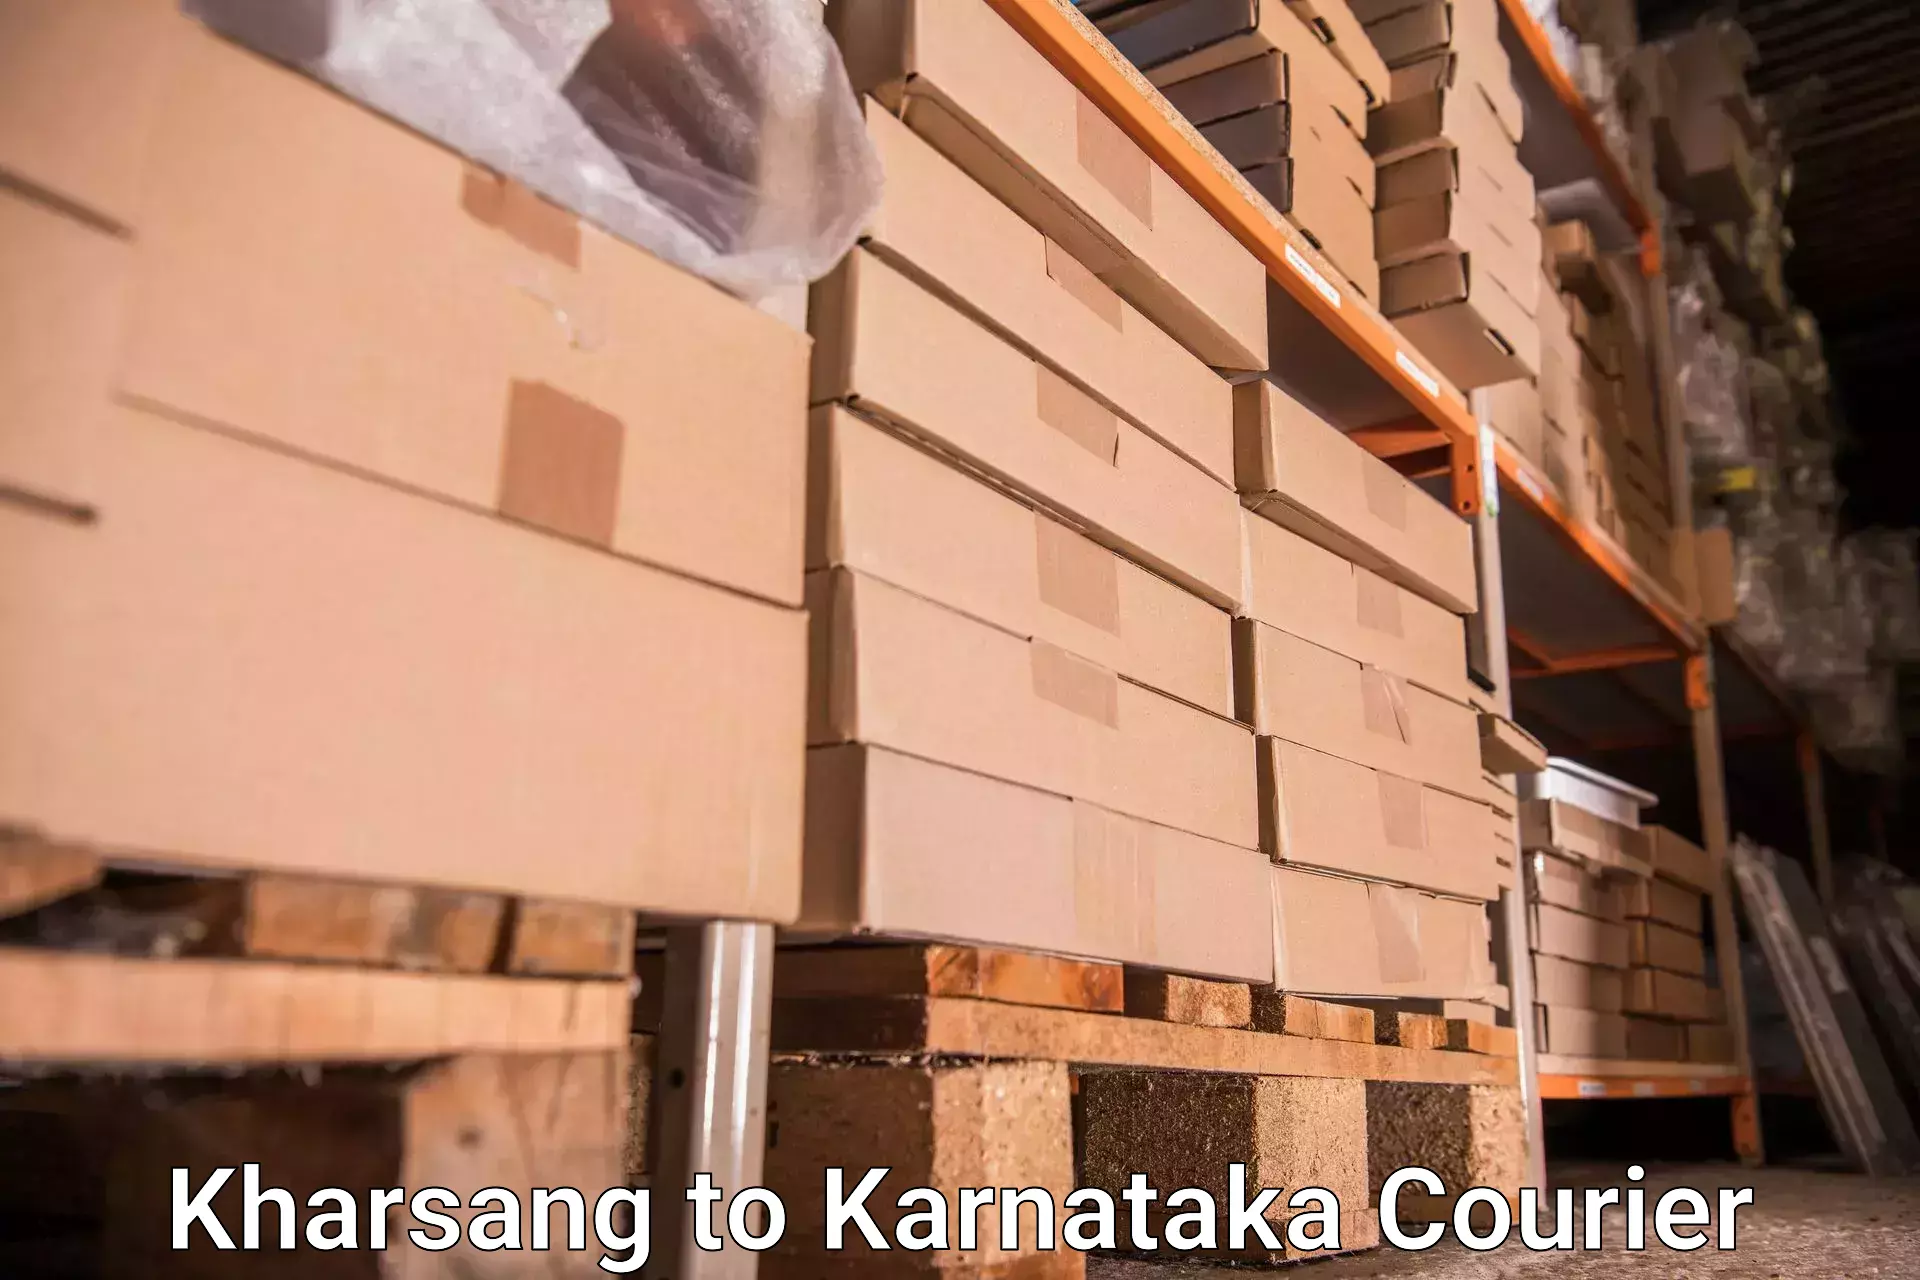 Baggage shipping schedule Kharsang to Kanjarakatte